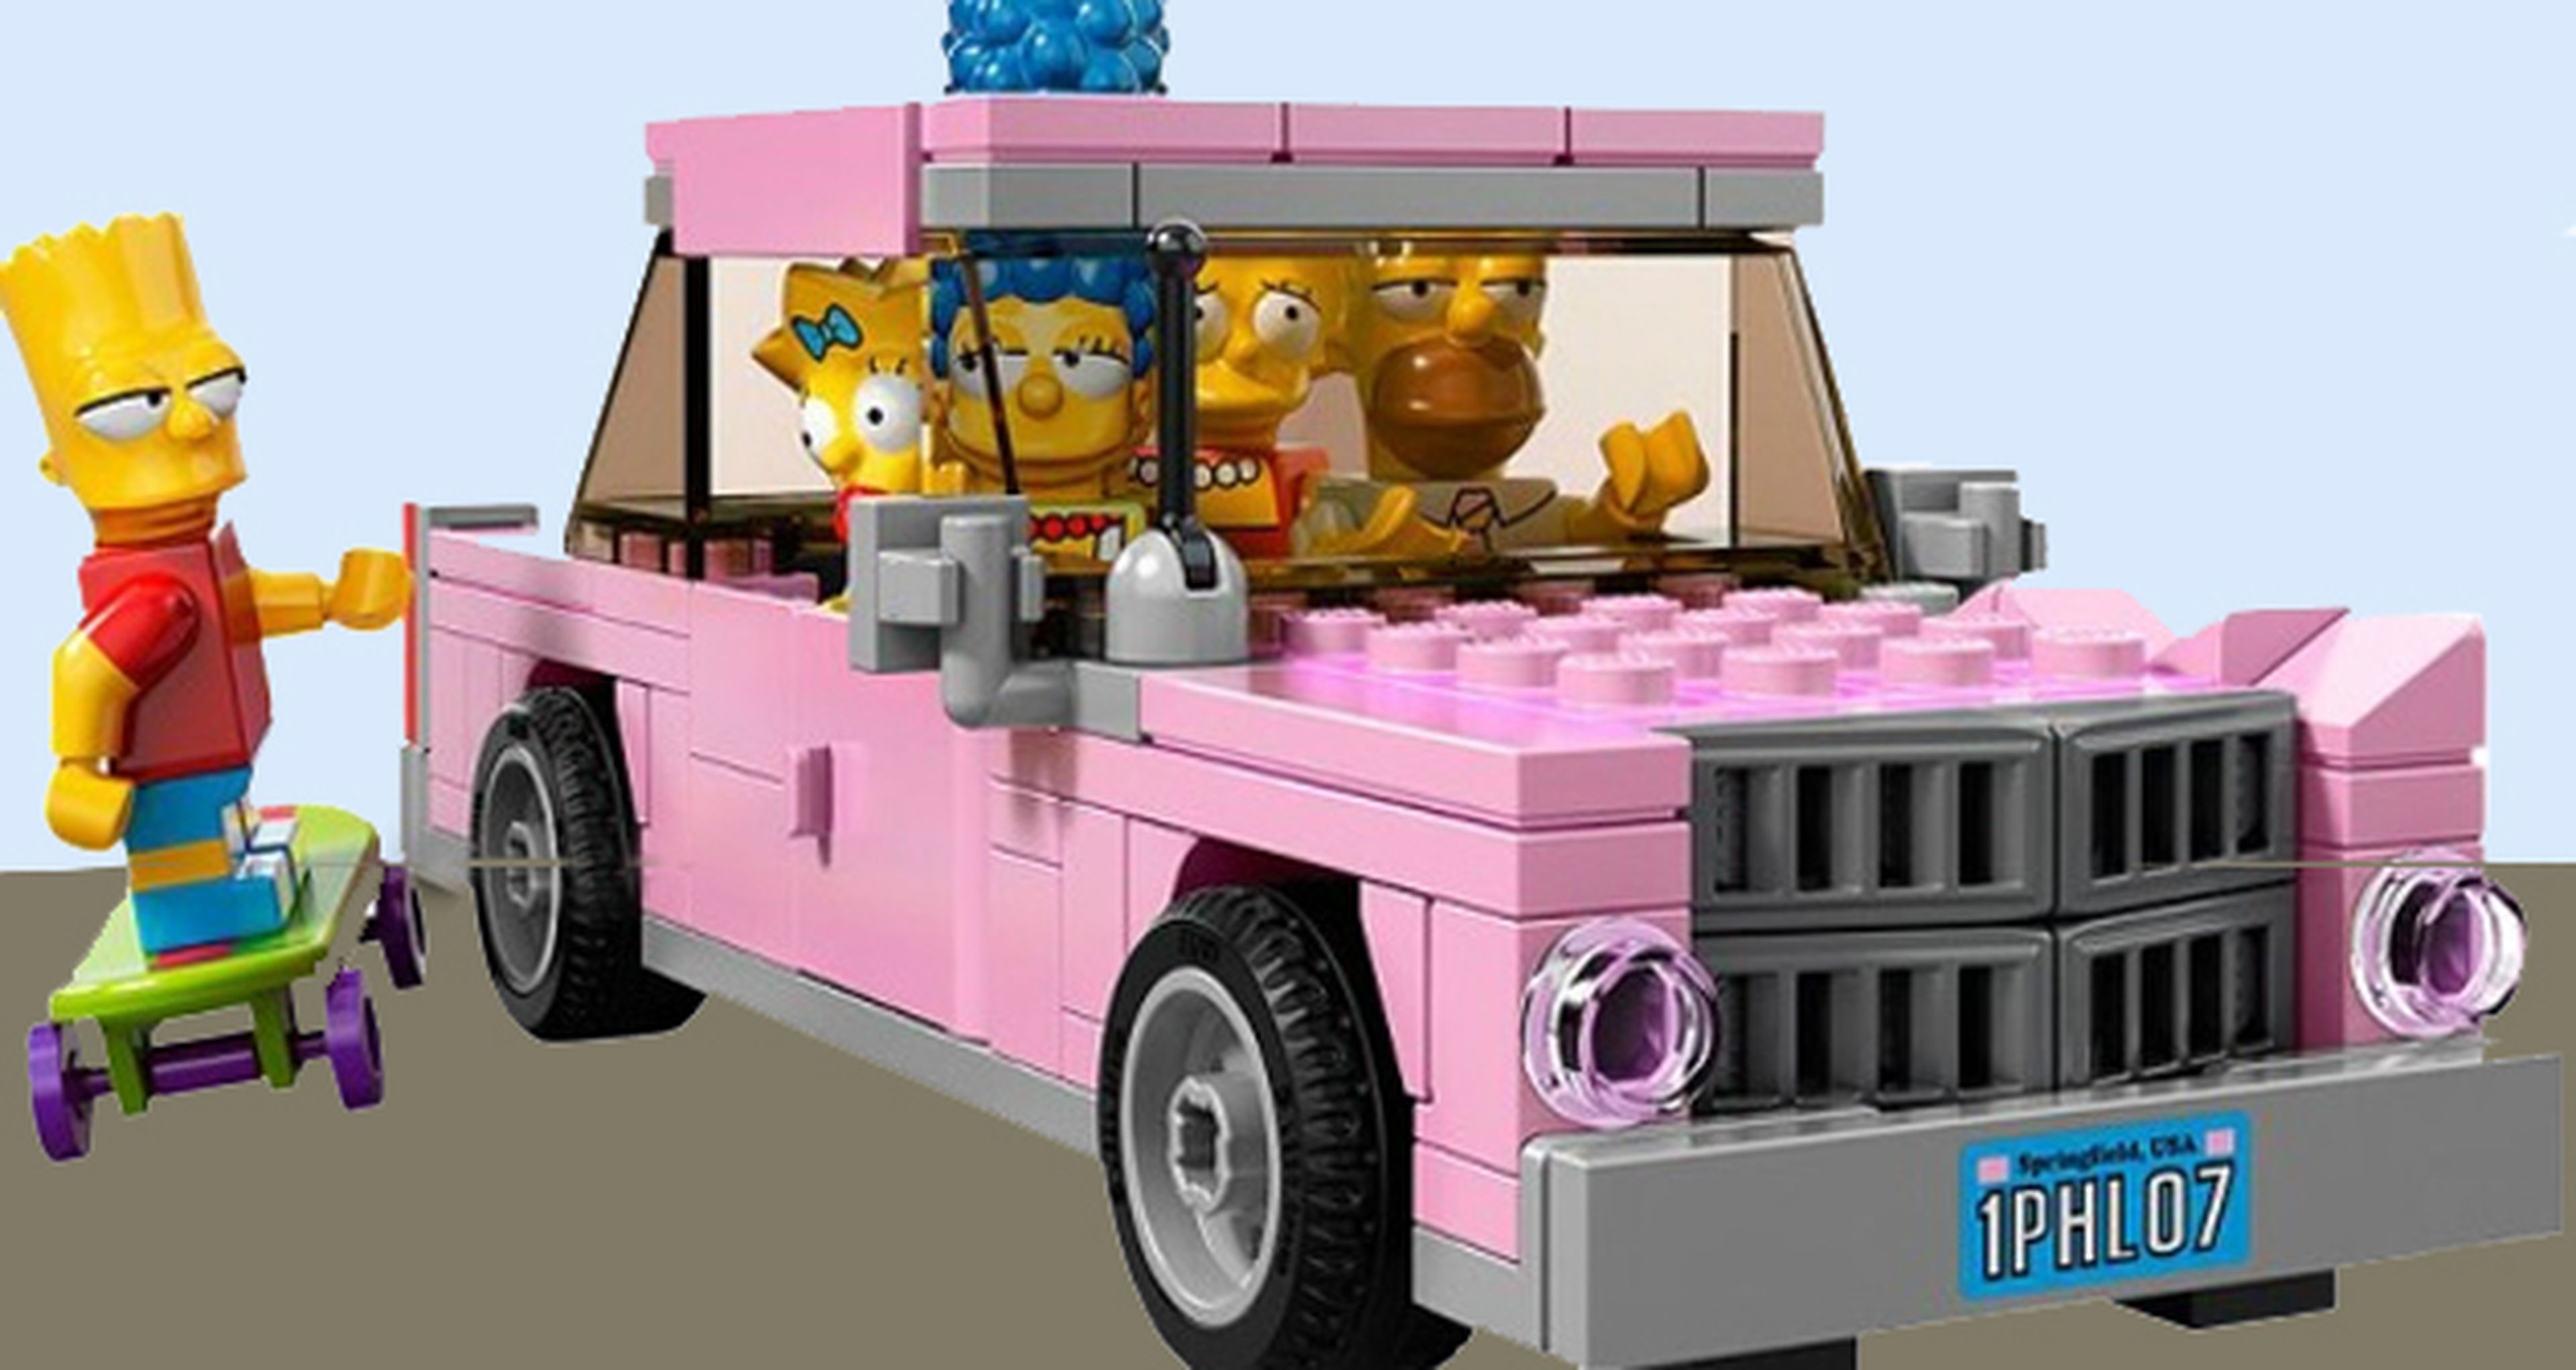 Fox emitirá un episodio de los Simpson en formato LEGO